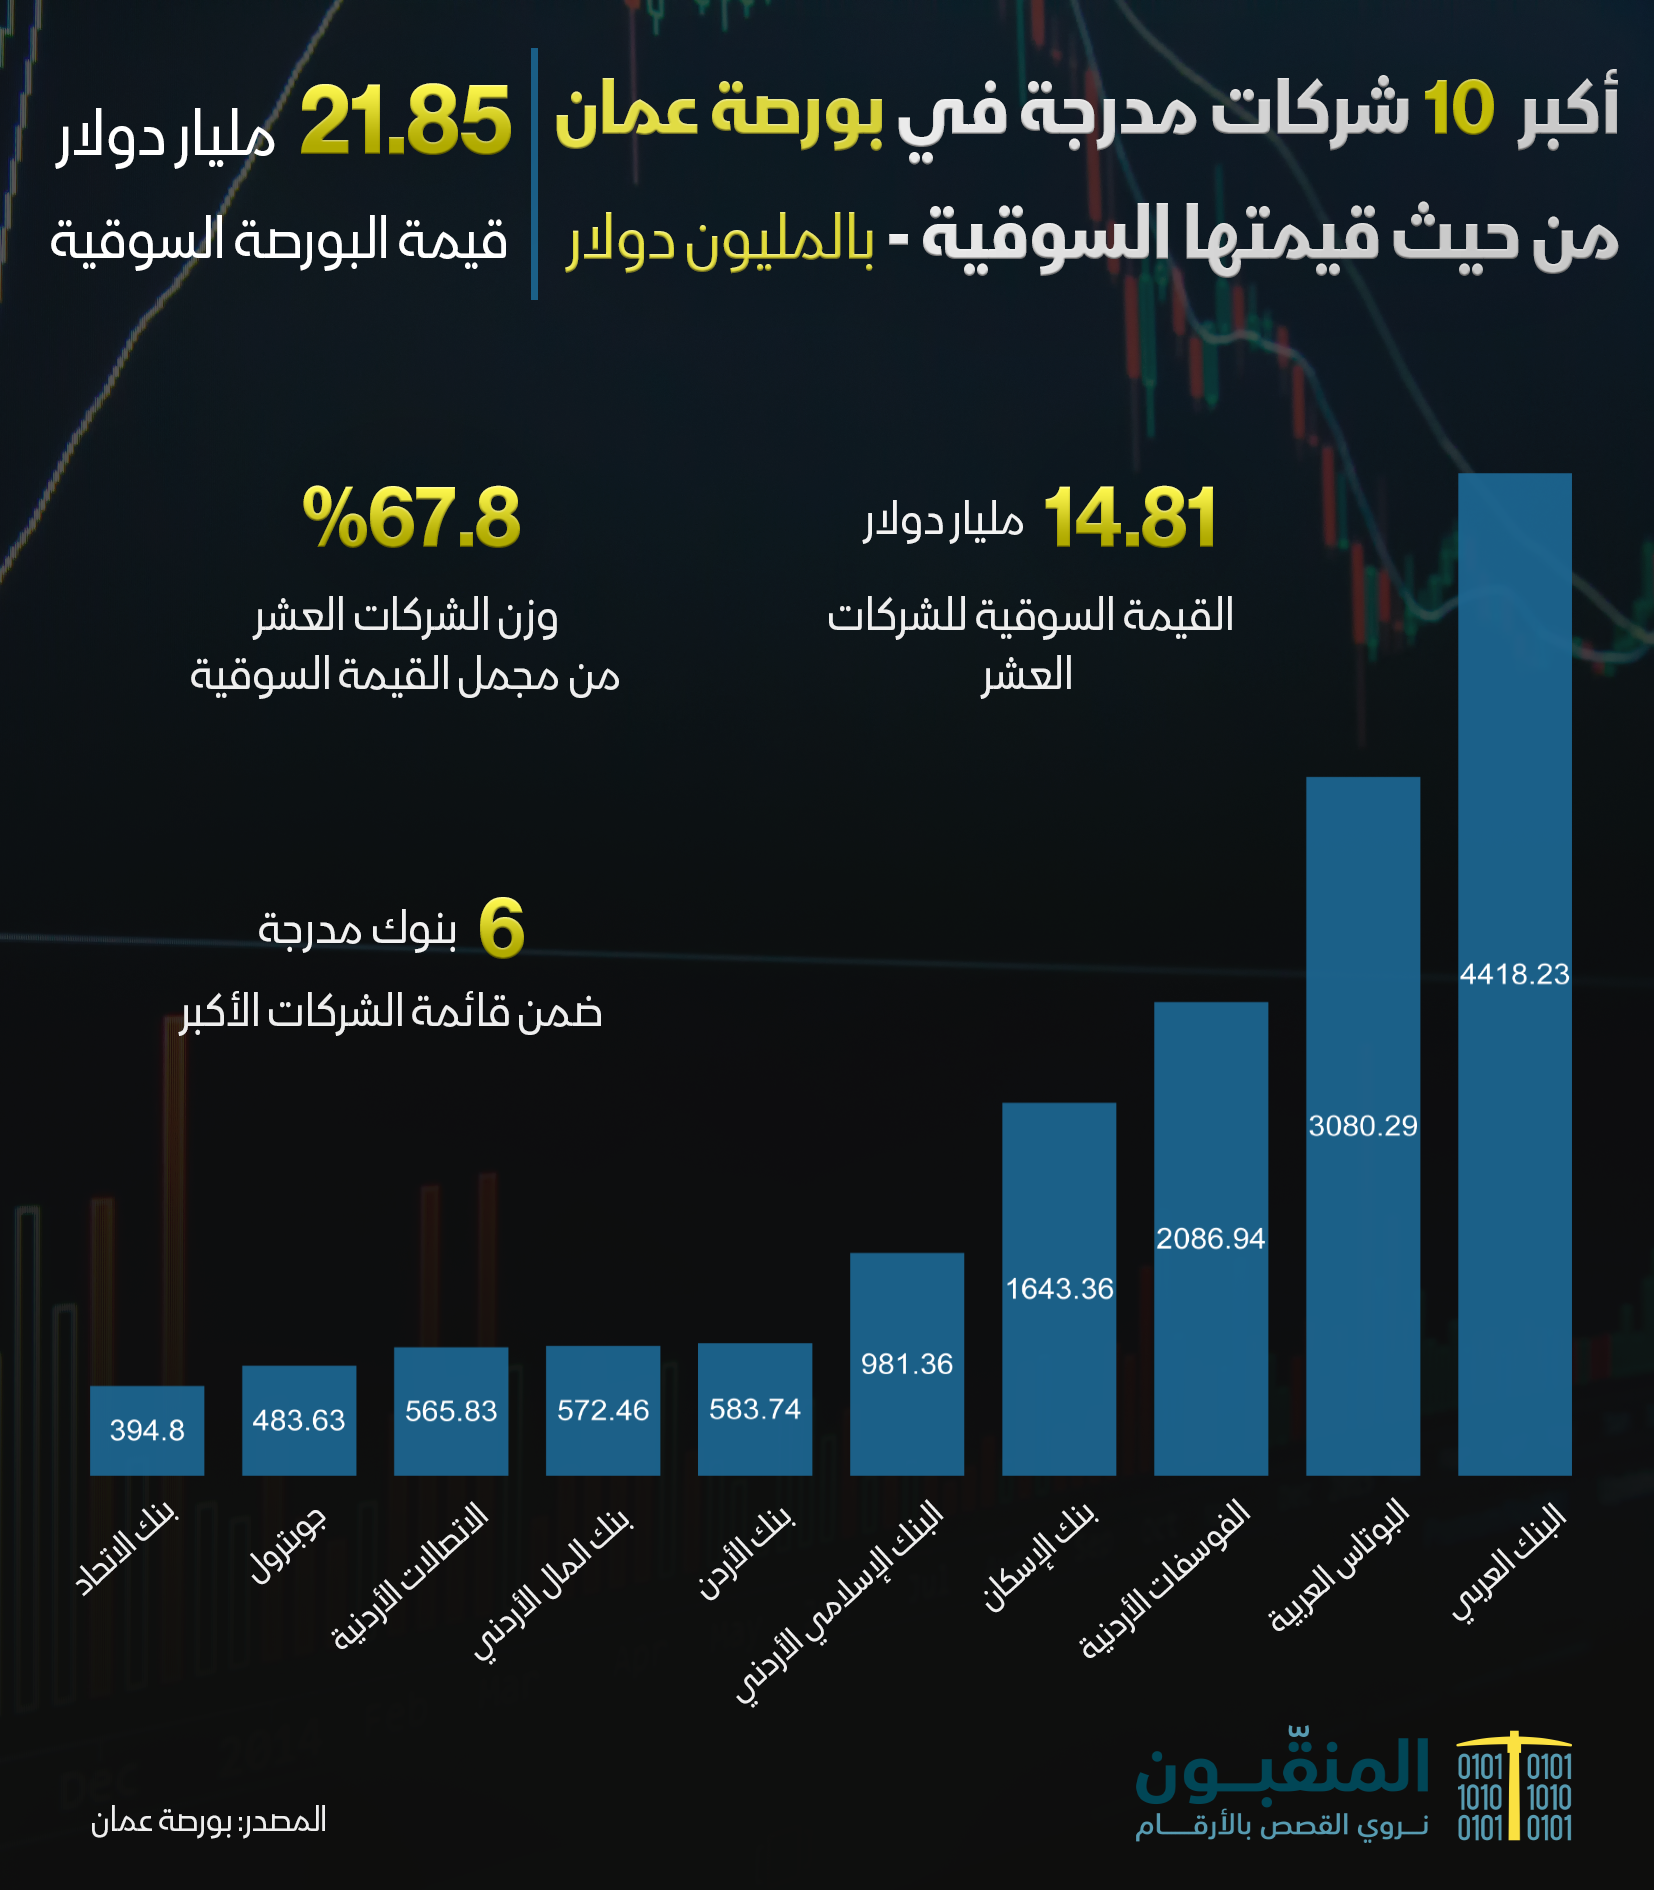 الشركات العشر الأكبر ببورصة عمان.png